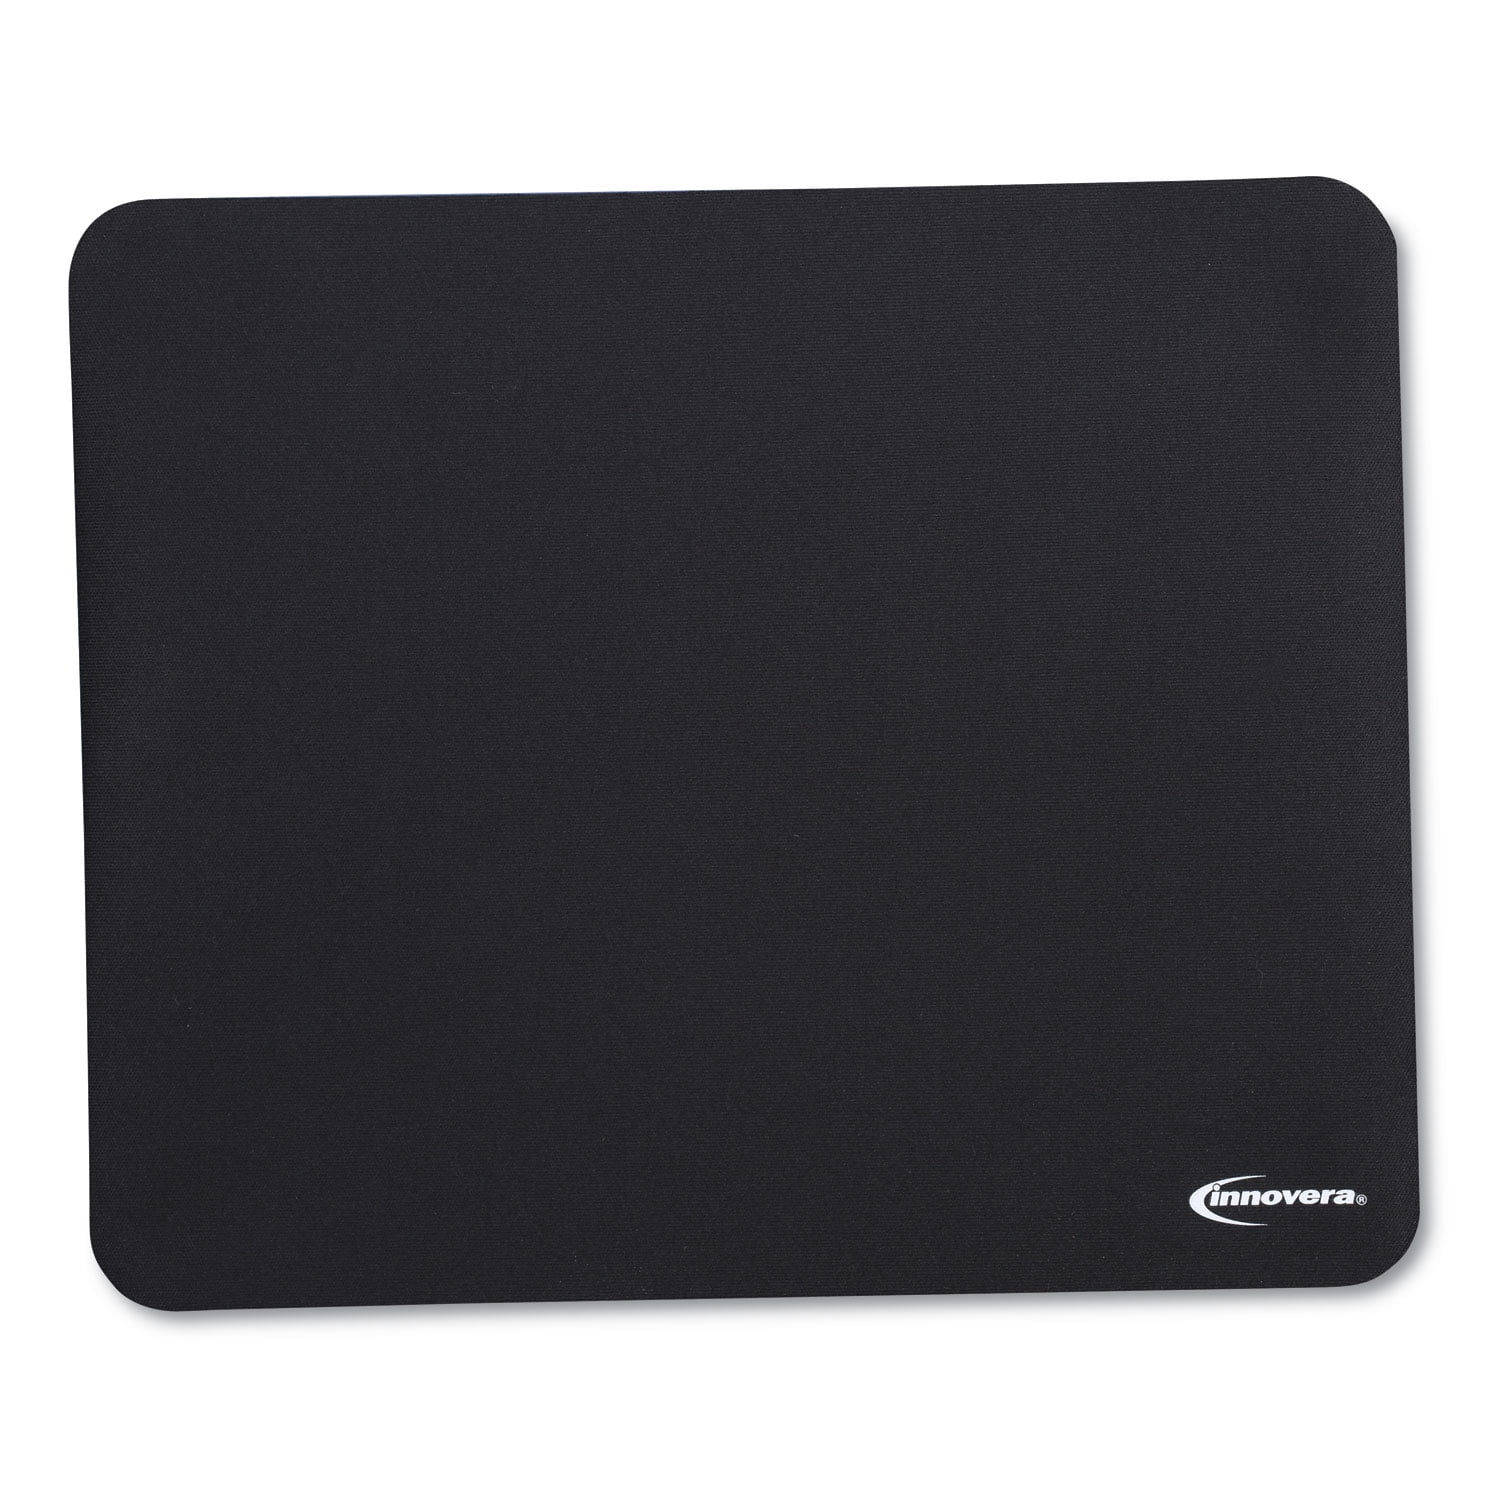 Allsop Widescreen Mousepad – Black – (29649) - Walmart.com